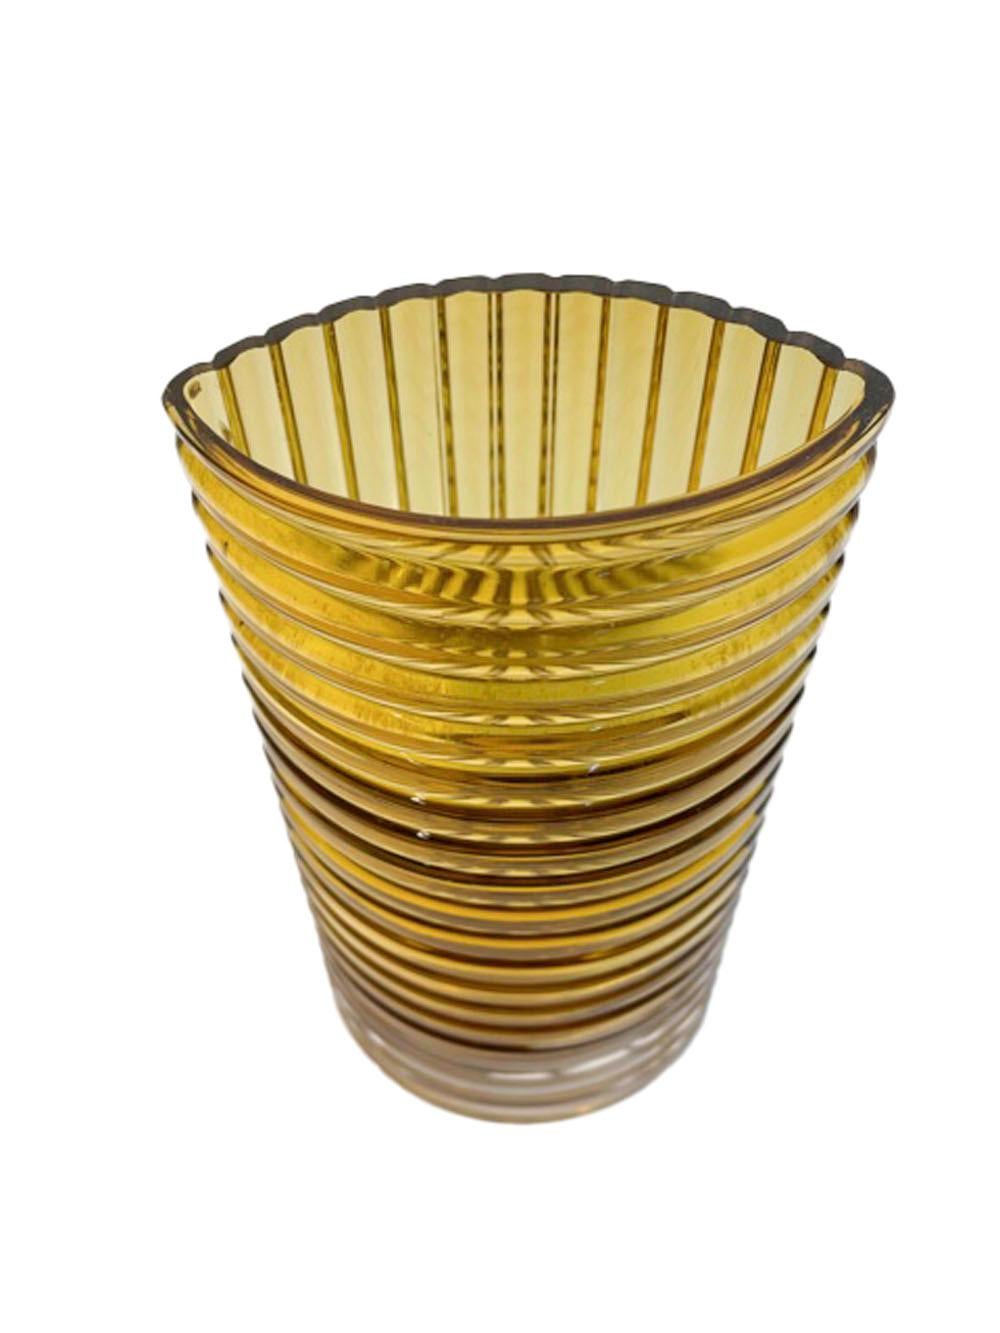 Swedish Vintage Clear Over Amber Lindshammar Vase of Elliptical Form For Sale